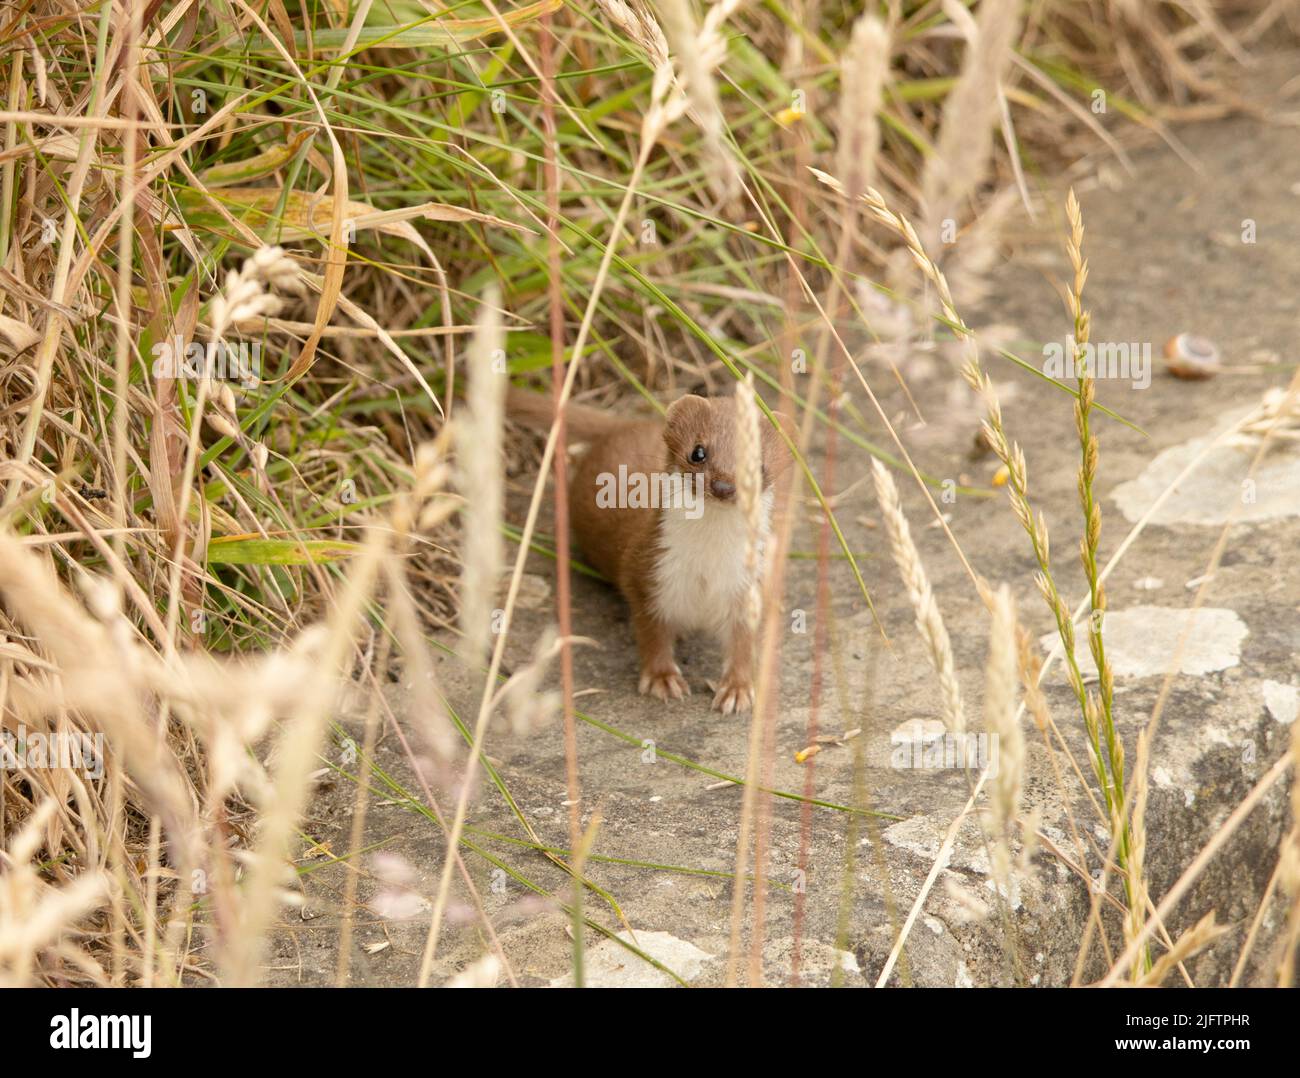 Der Weasel sieht aus wie eine kleine Eselin und ist in Großbritannien weit verbreitet. Sie sind Tag und Nacht aktiv und fressende Raubtiere kleiner Säugetiere. Stockfoto